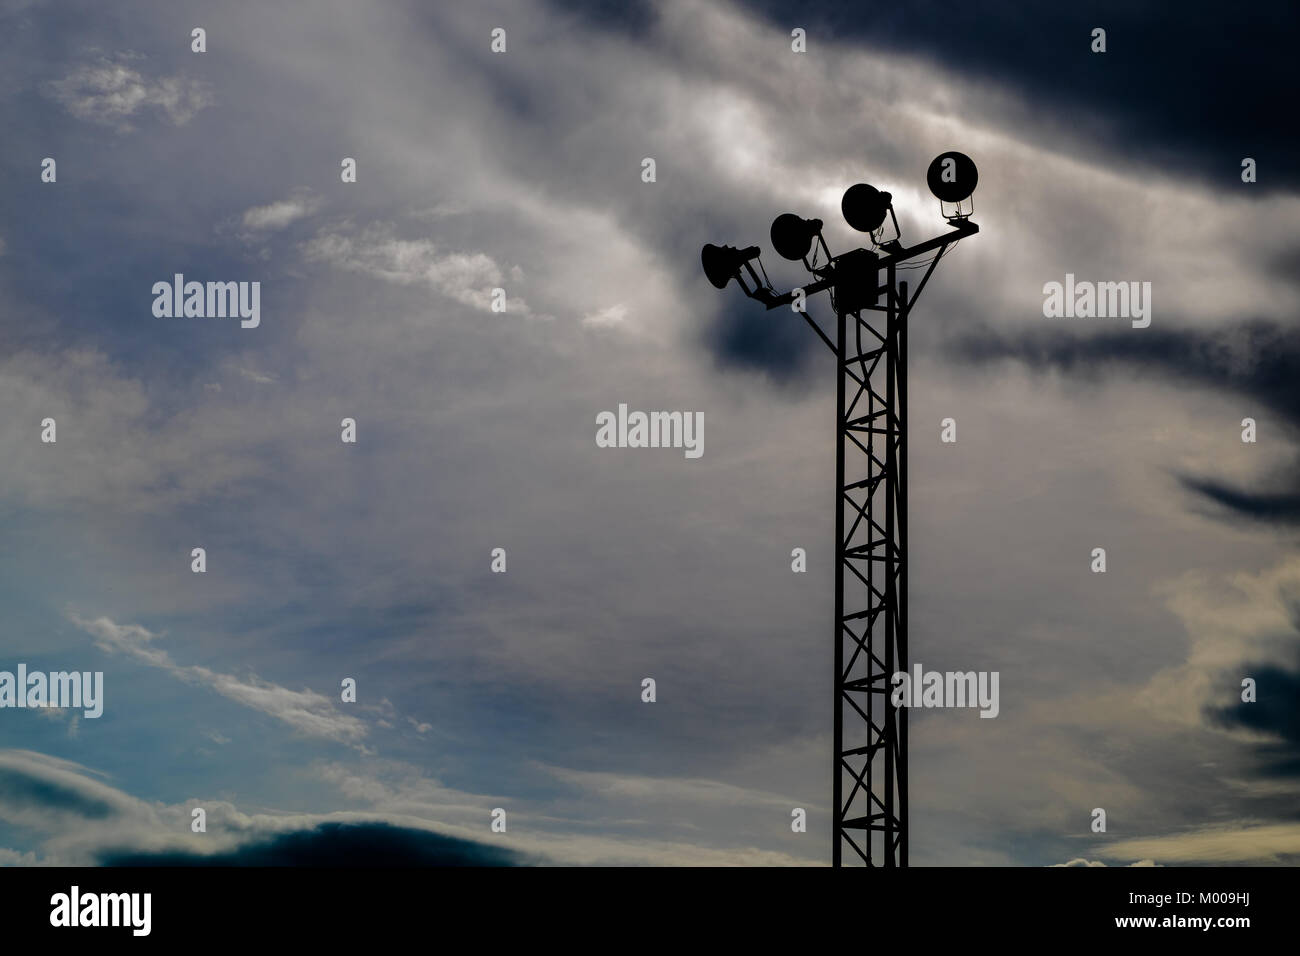 Silhouette von eigenständigen Spotlight pole wurde mit bewölkt dunkel blauen Himmel Hintergrund geschlossen, selektive konzentrieren. Stockfoto